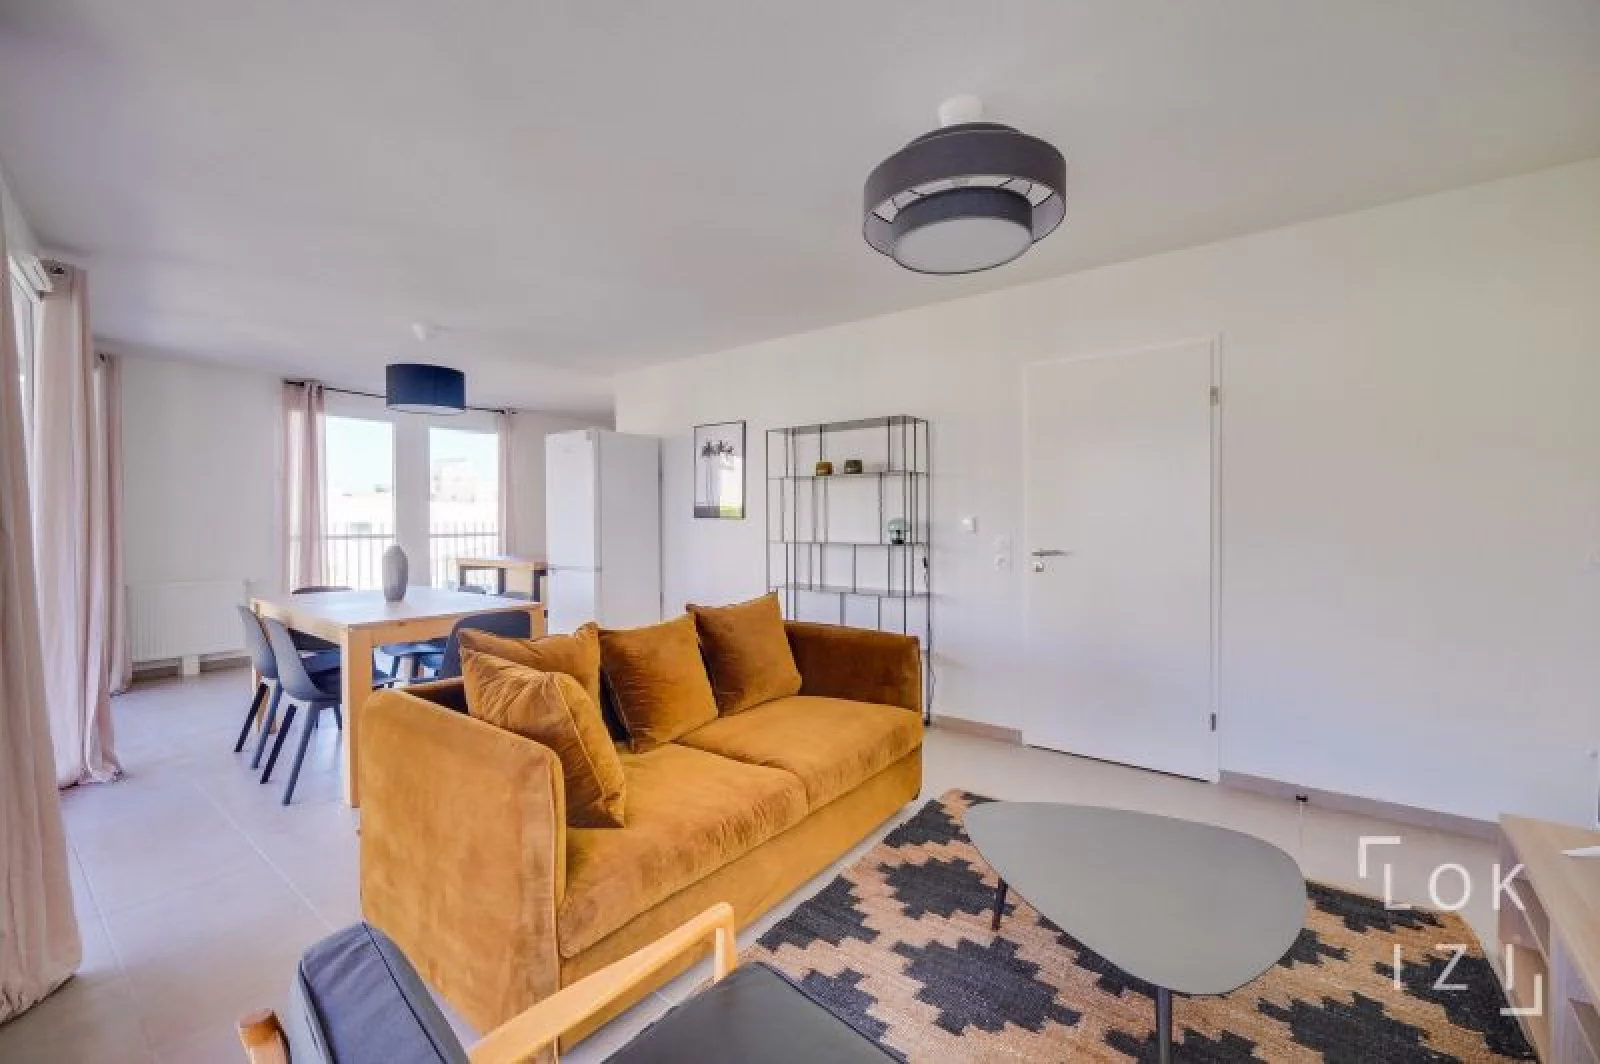 Location appartement meublé 3 pièces 70m² (Bordeaux - Bassins à flot)